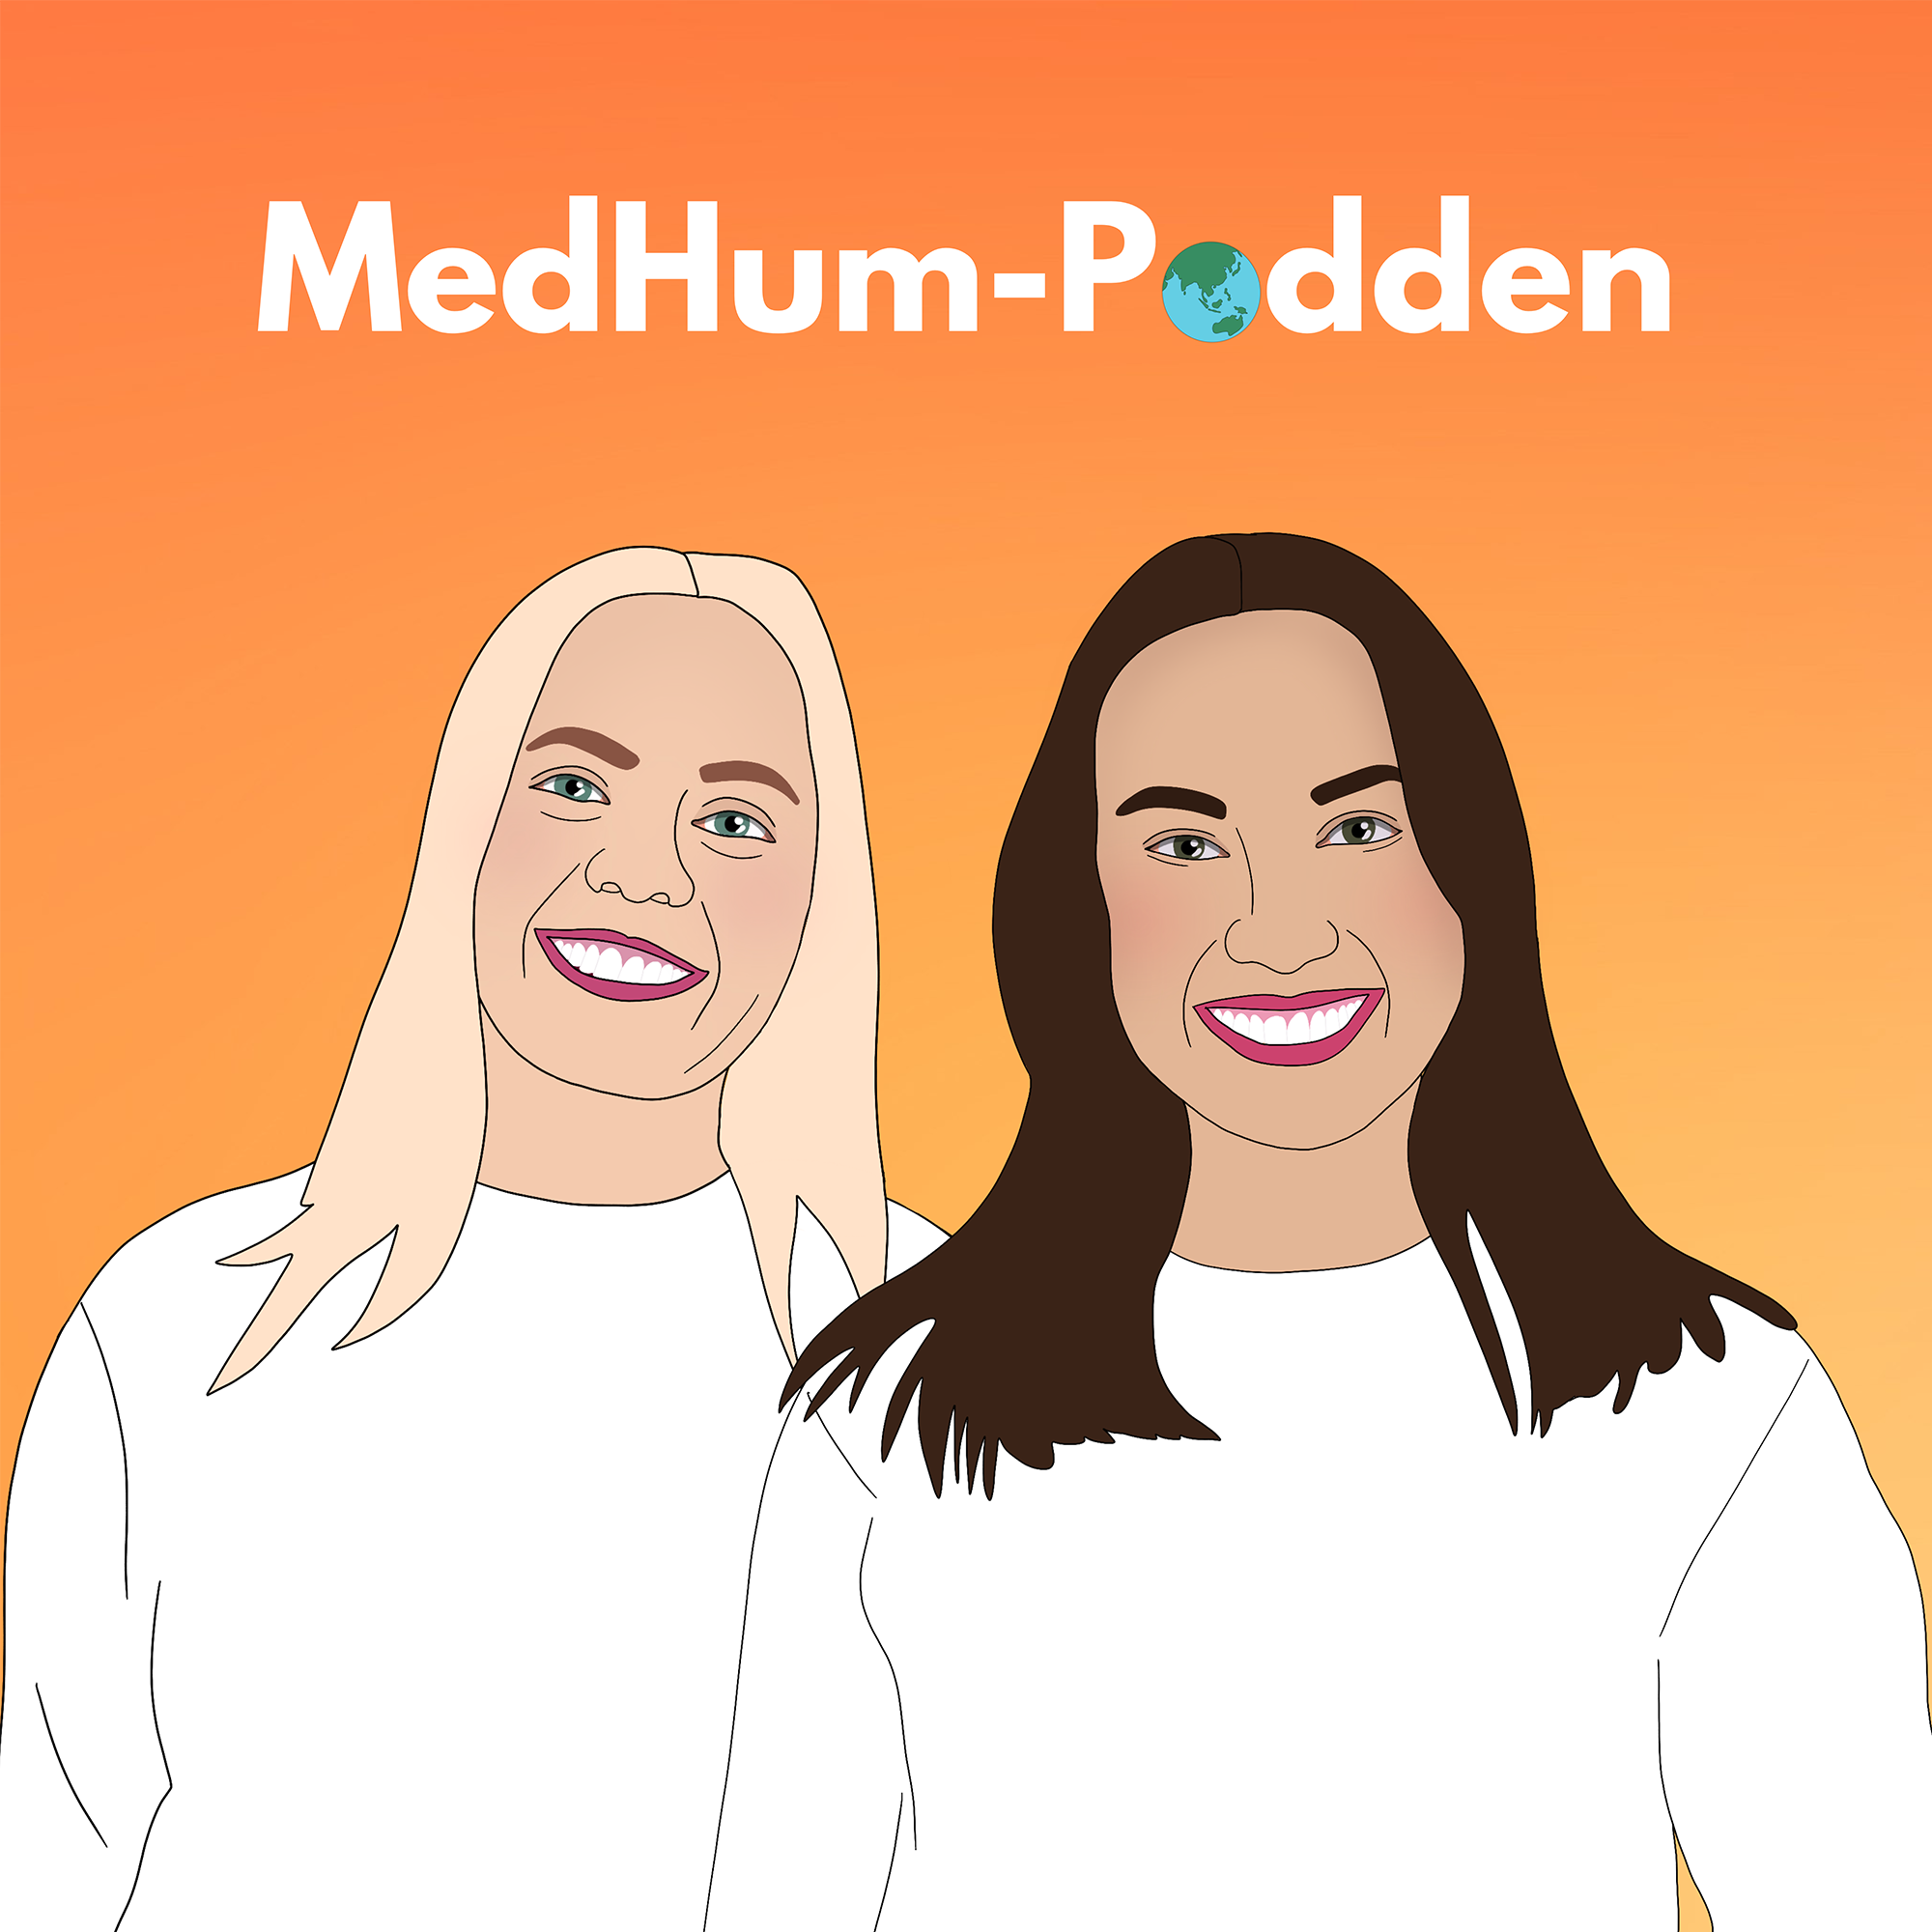 MedHum-Podden